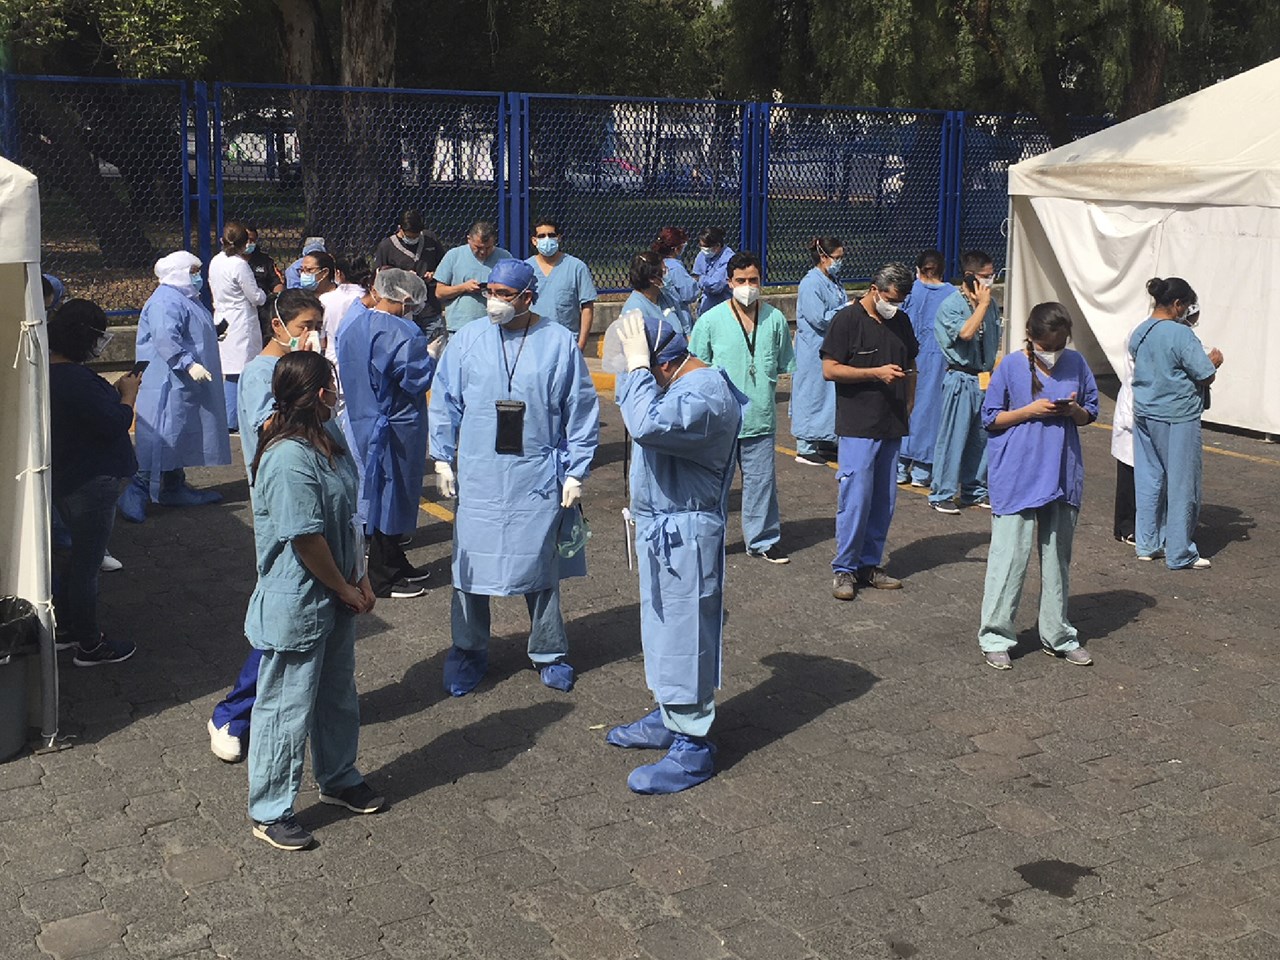 Εργαζόμενοι σε δημόσιο νοσοκομείο στο Μεξικό περιμένουν στον δρόμο μετά τον σεισμό